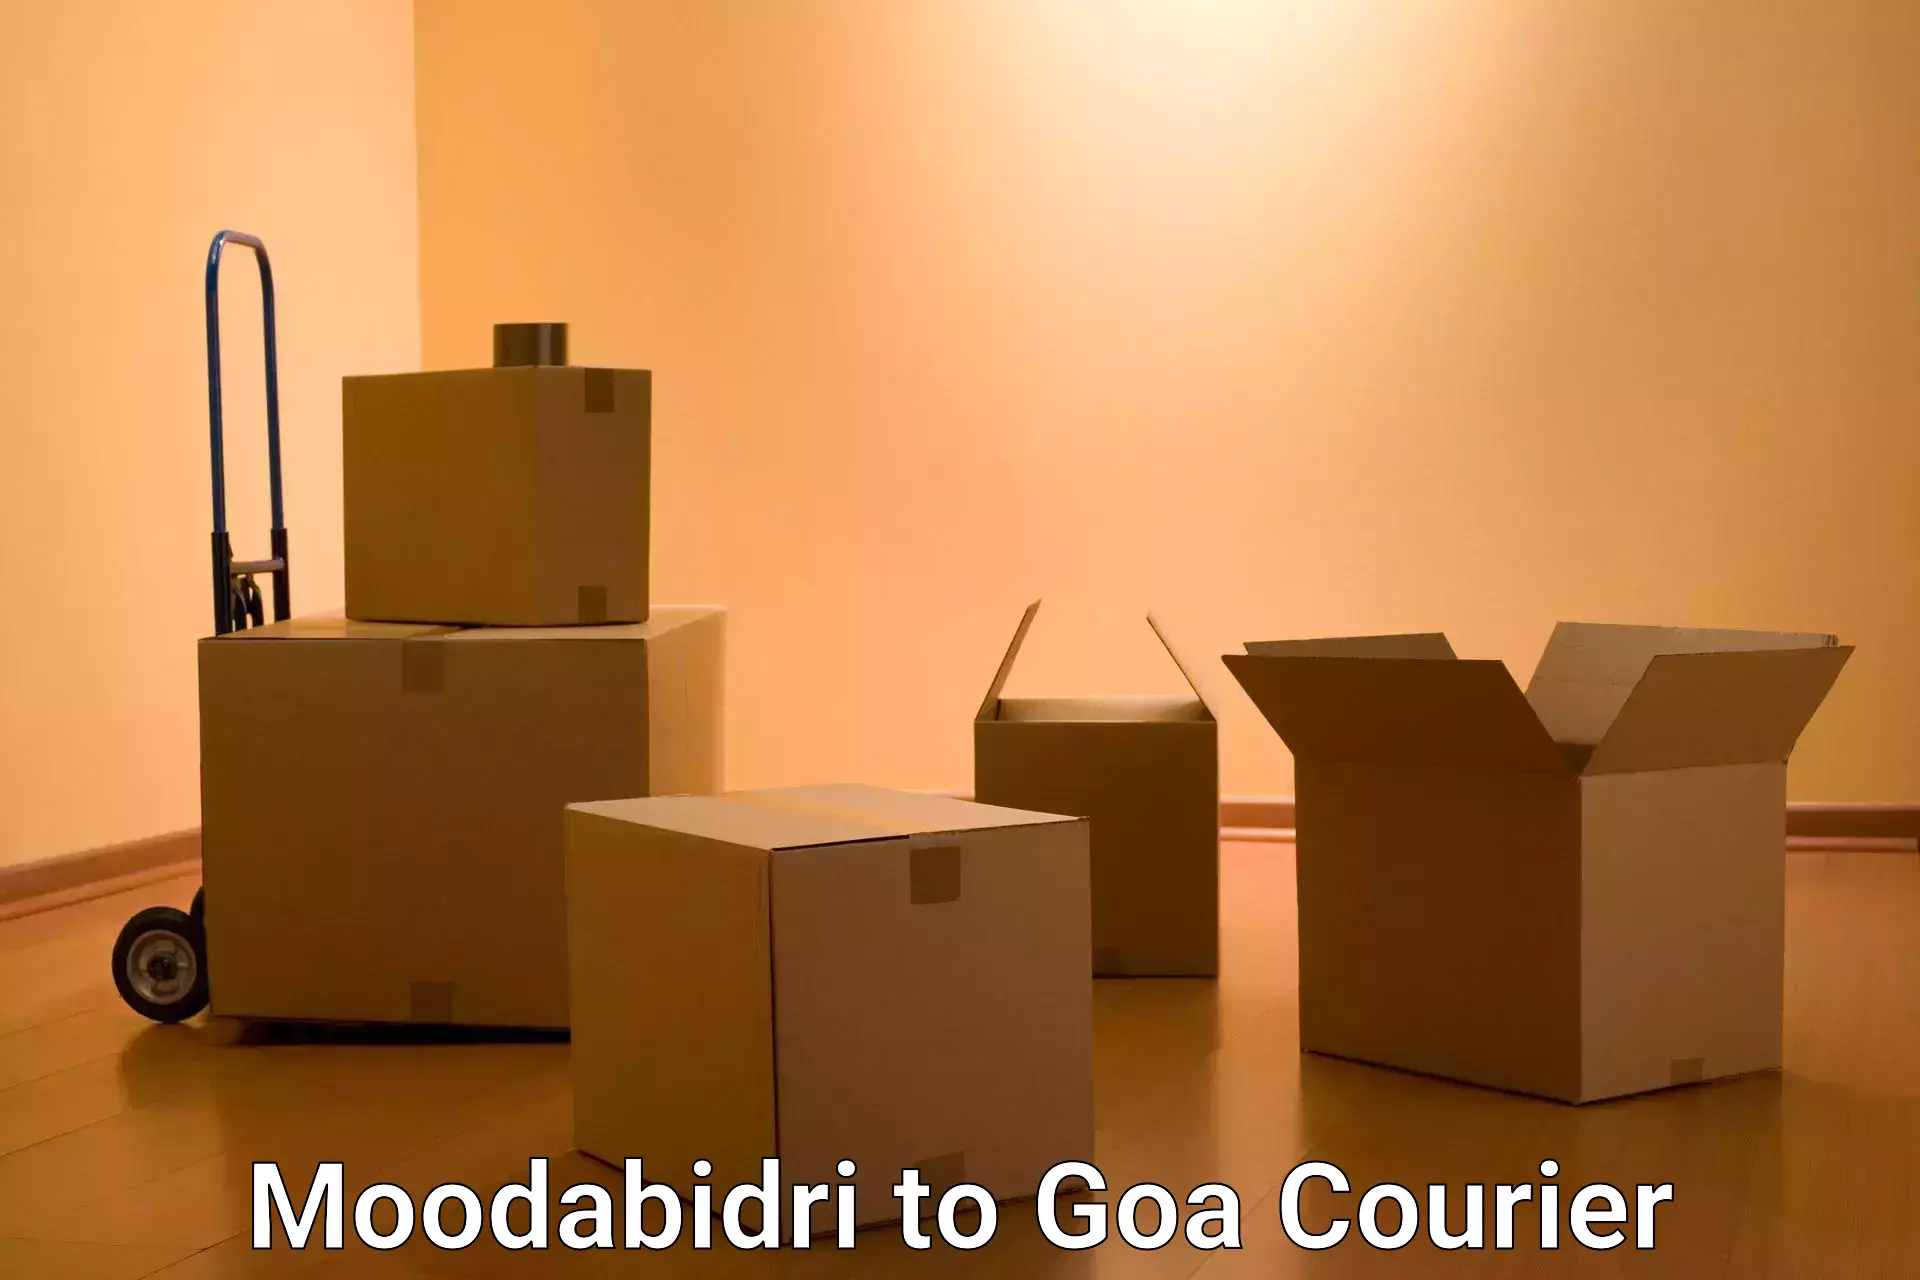 Overnight delivery services Moodabidri to NIT Goa